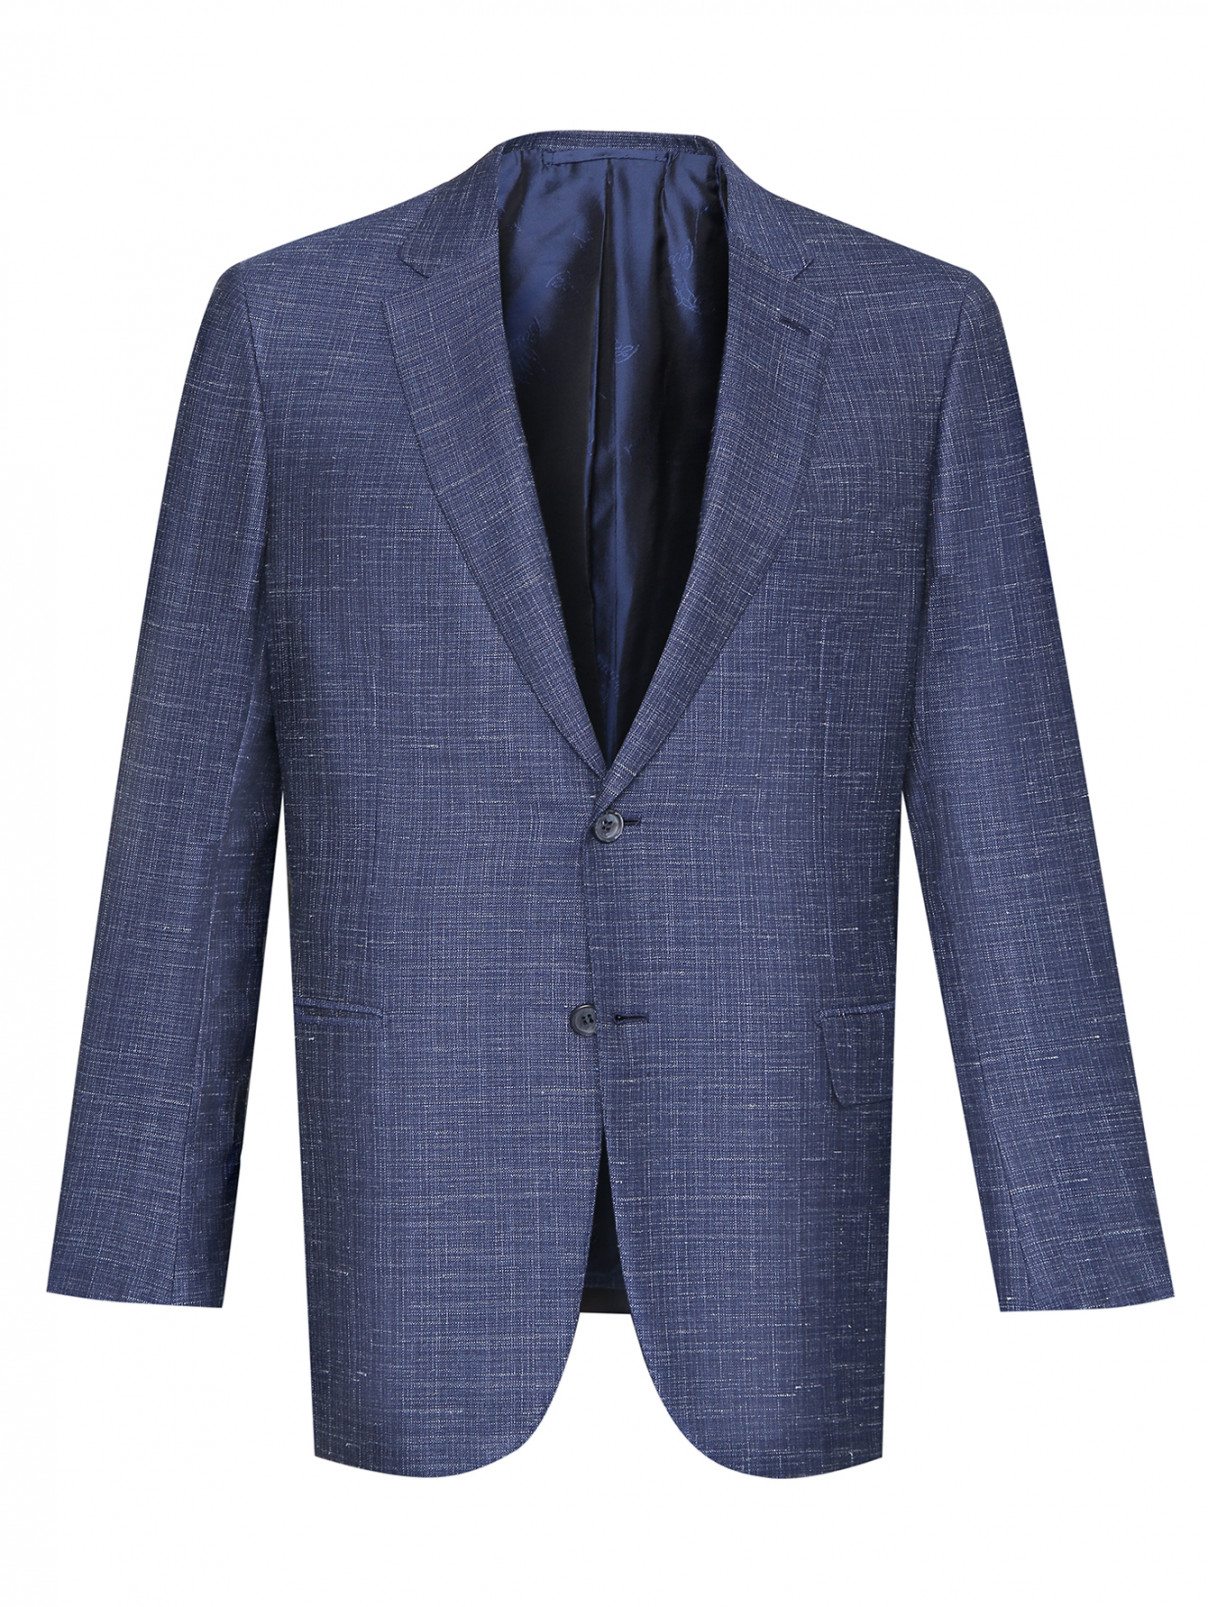 Пиджак из шерсти, шелка и льна Brioni  –  Общий вид